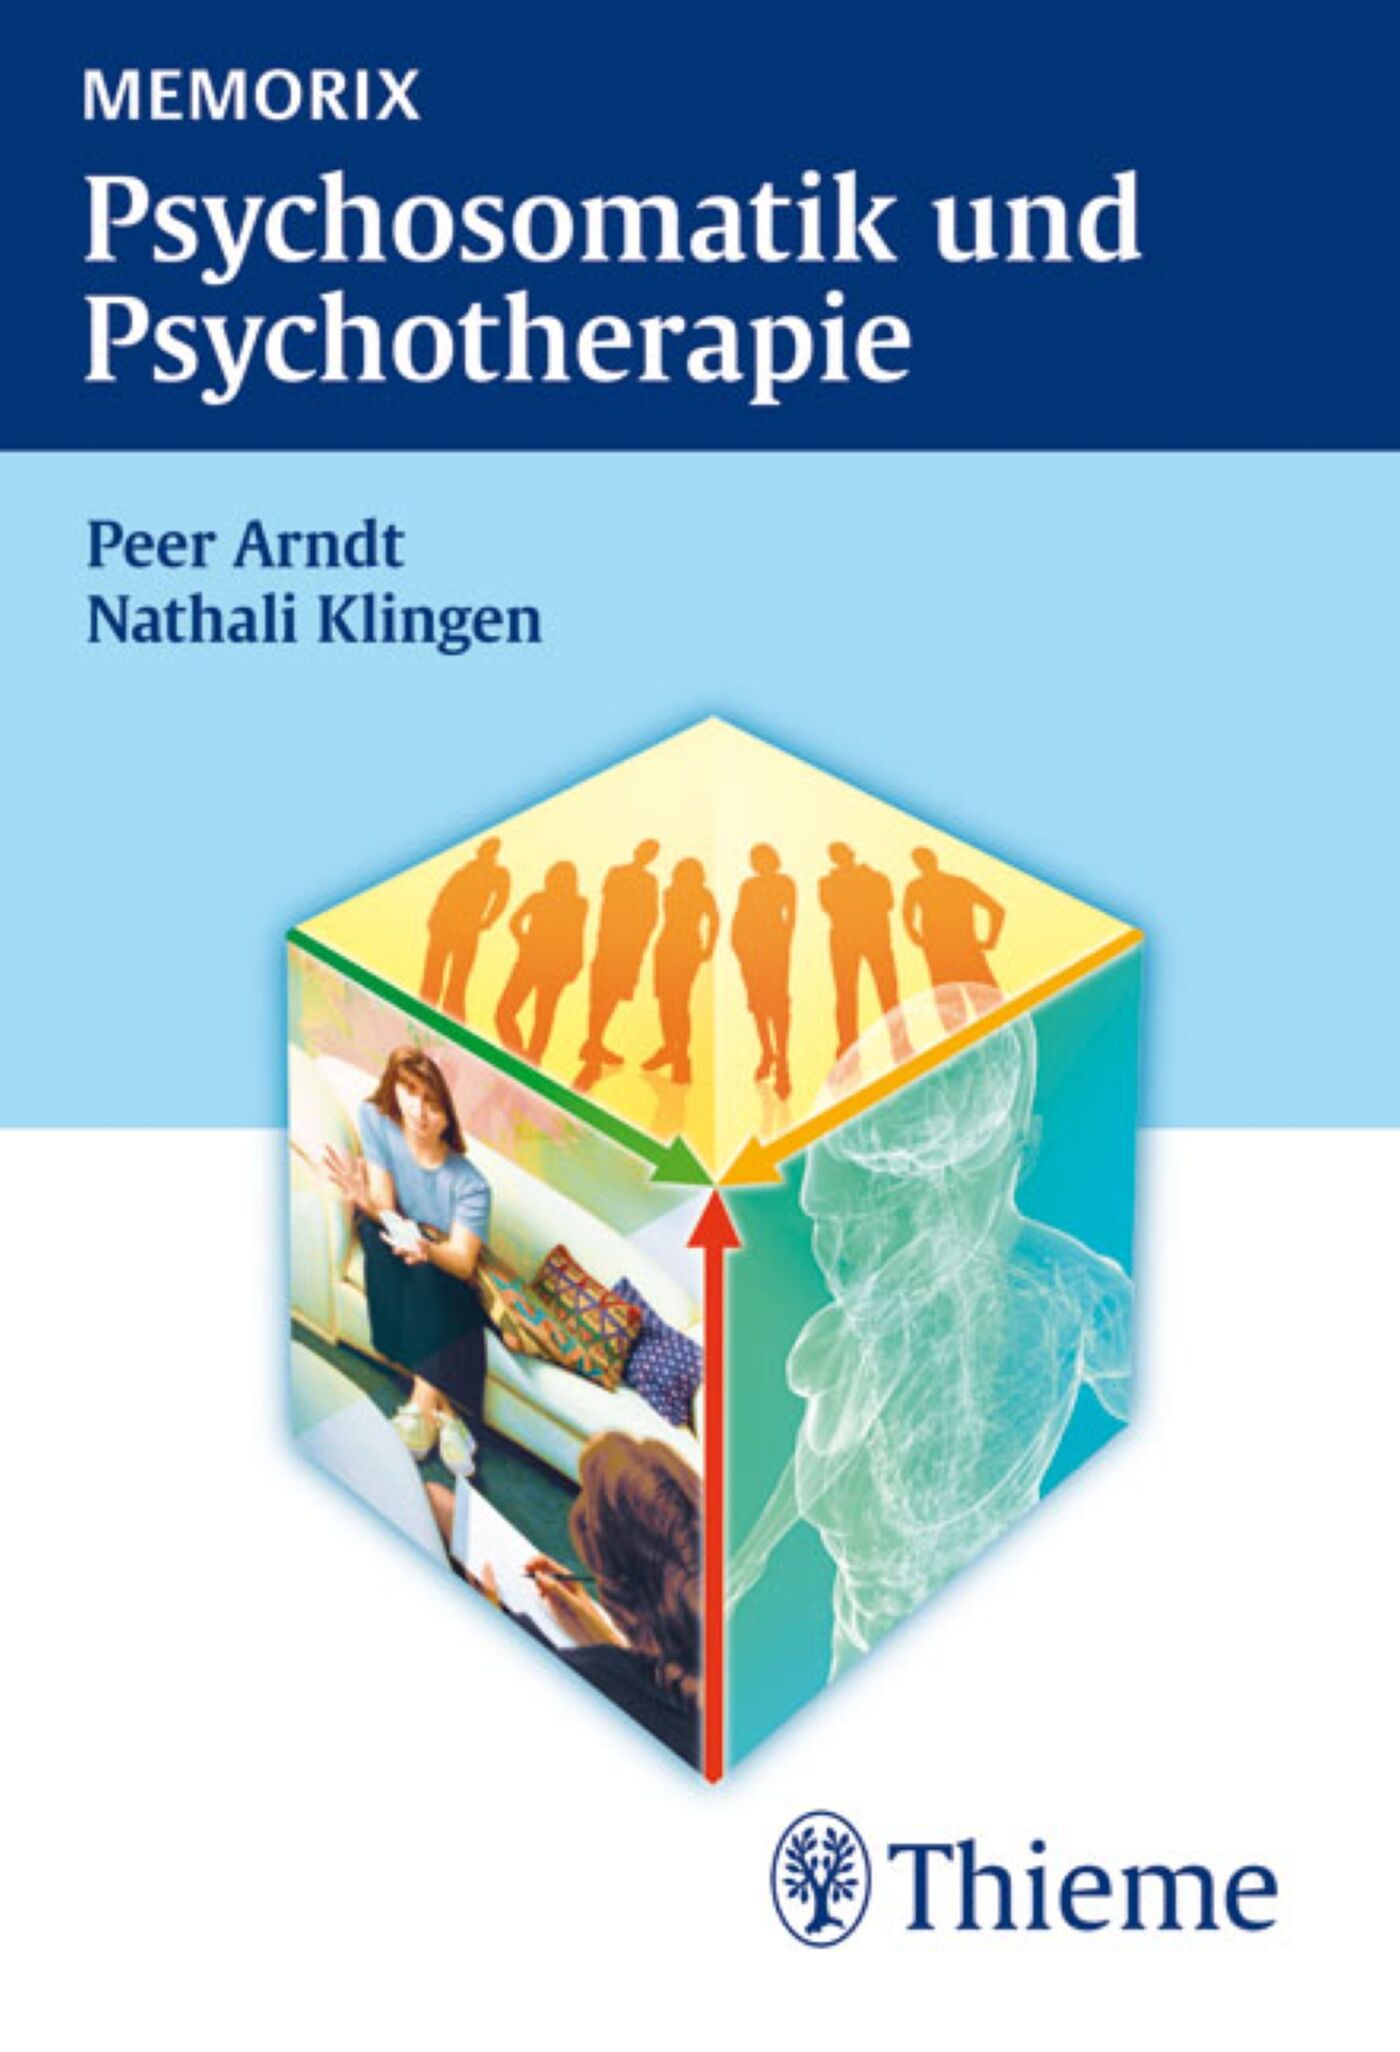 Memorix Psychosomatik und Psychotherapie, 9783131622112